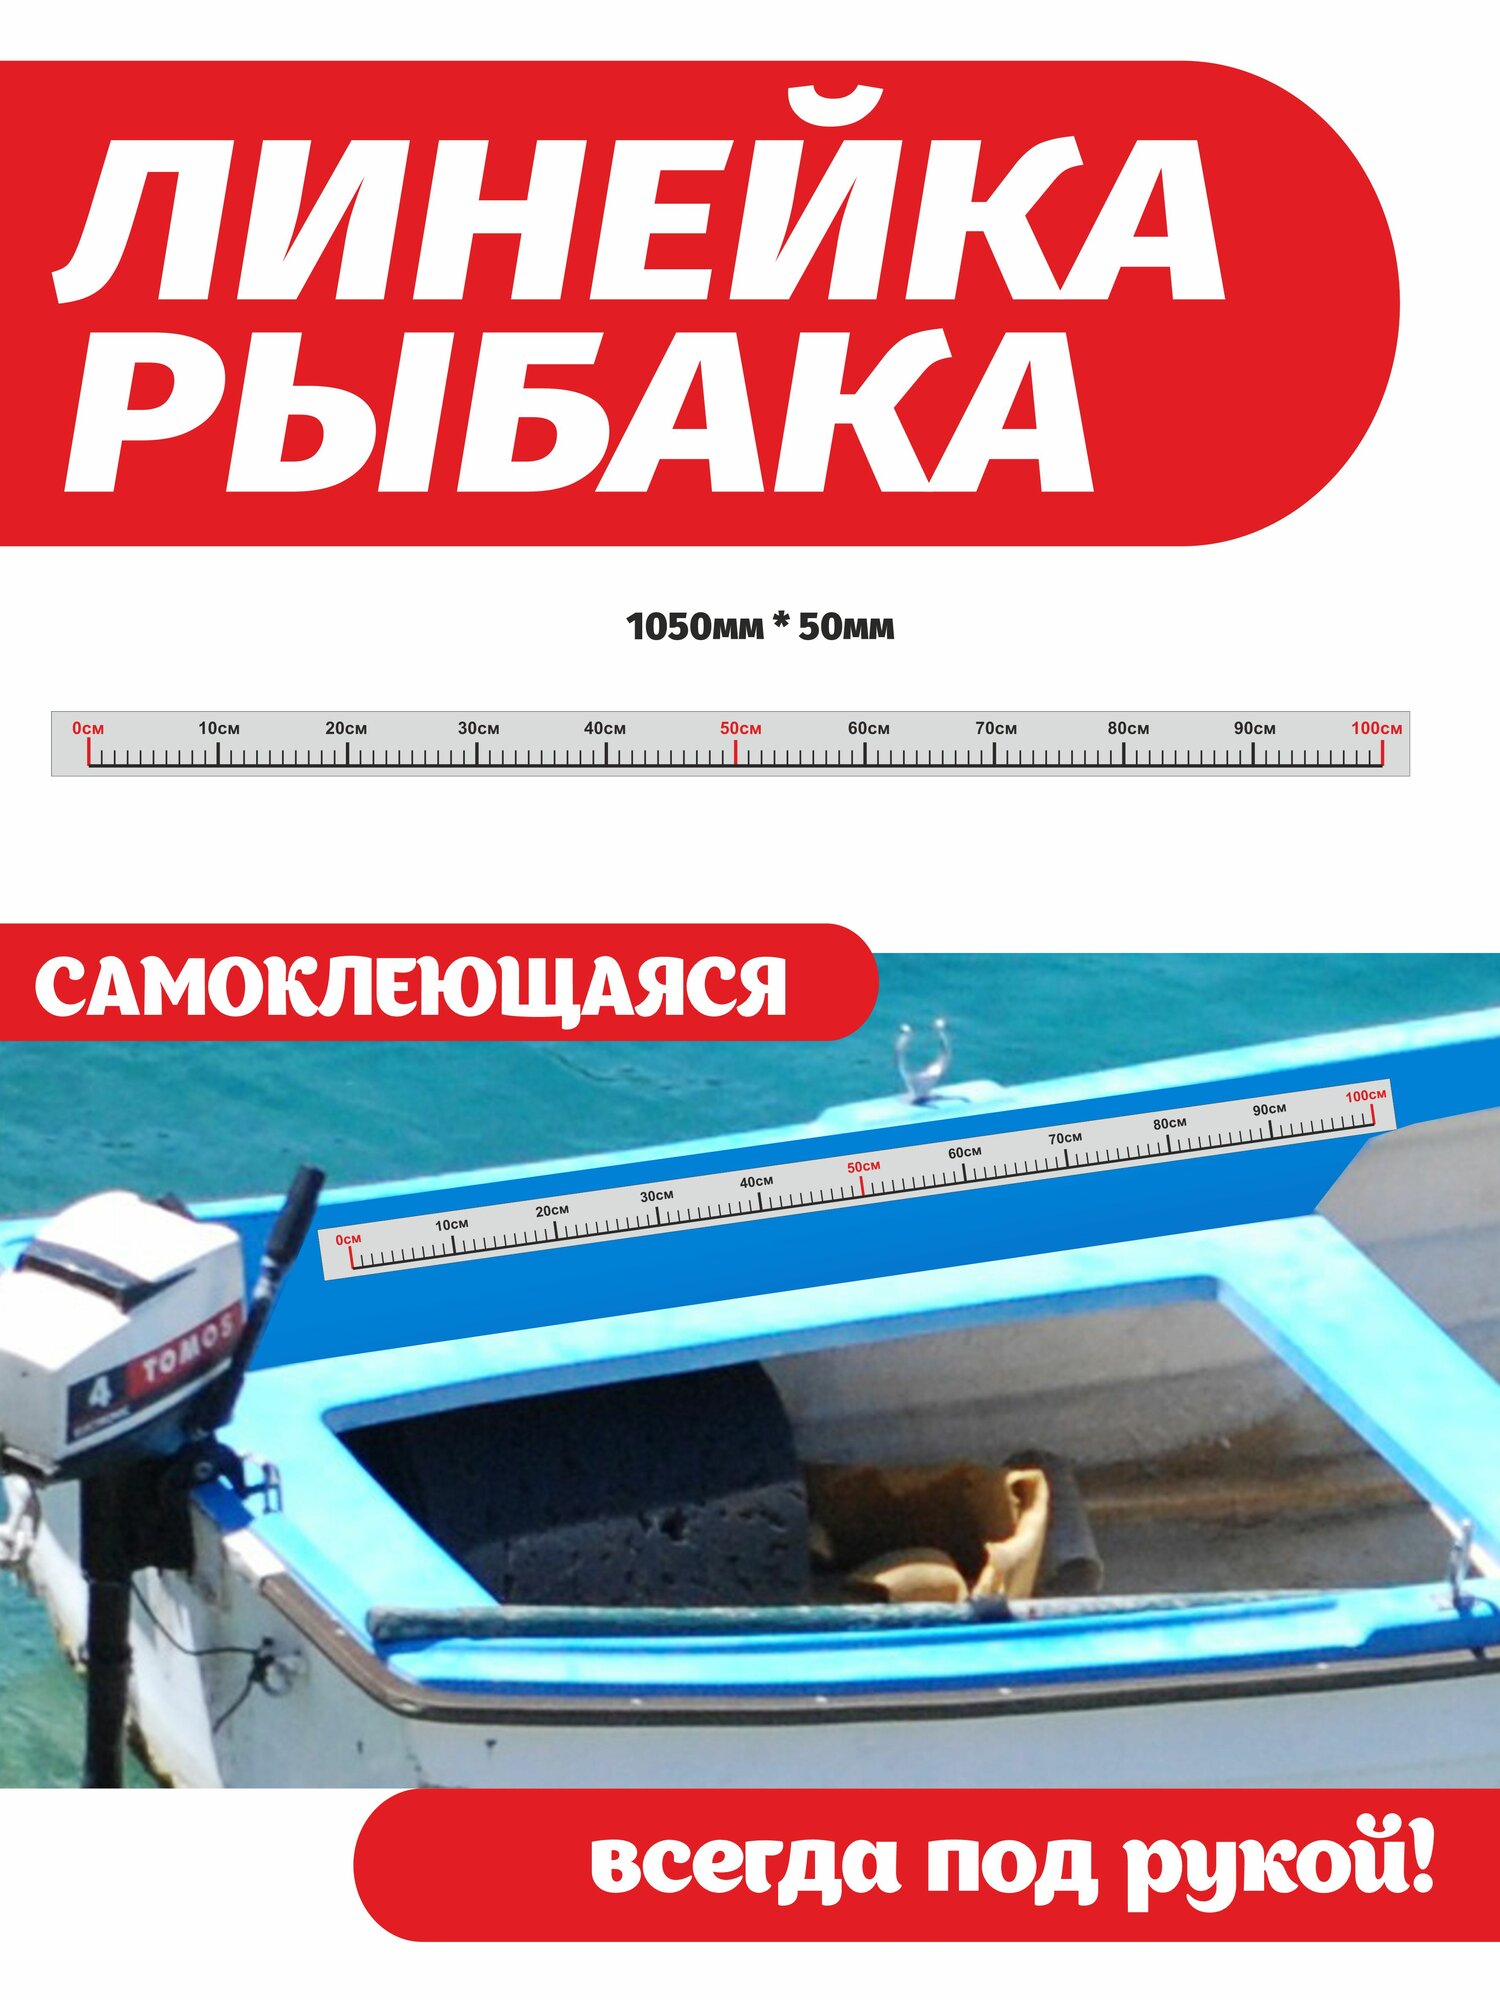 Наклейка на лодку и катер Линейка рыбака 105 см длина